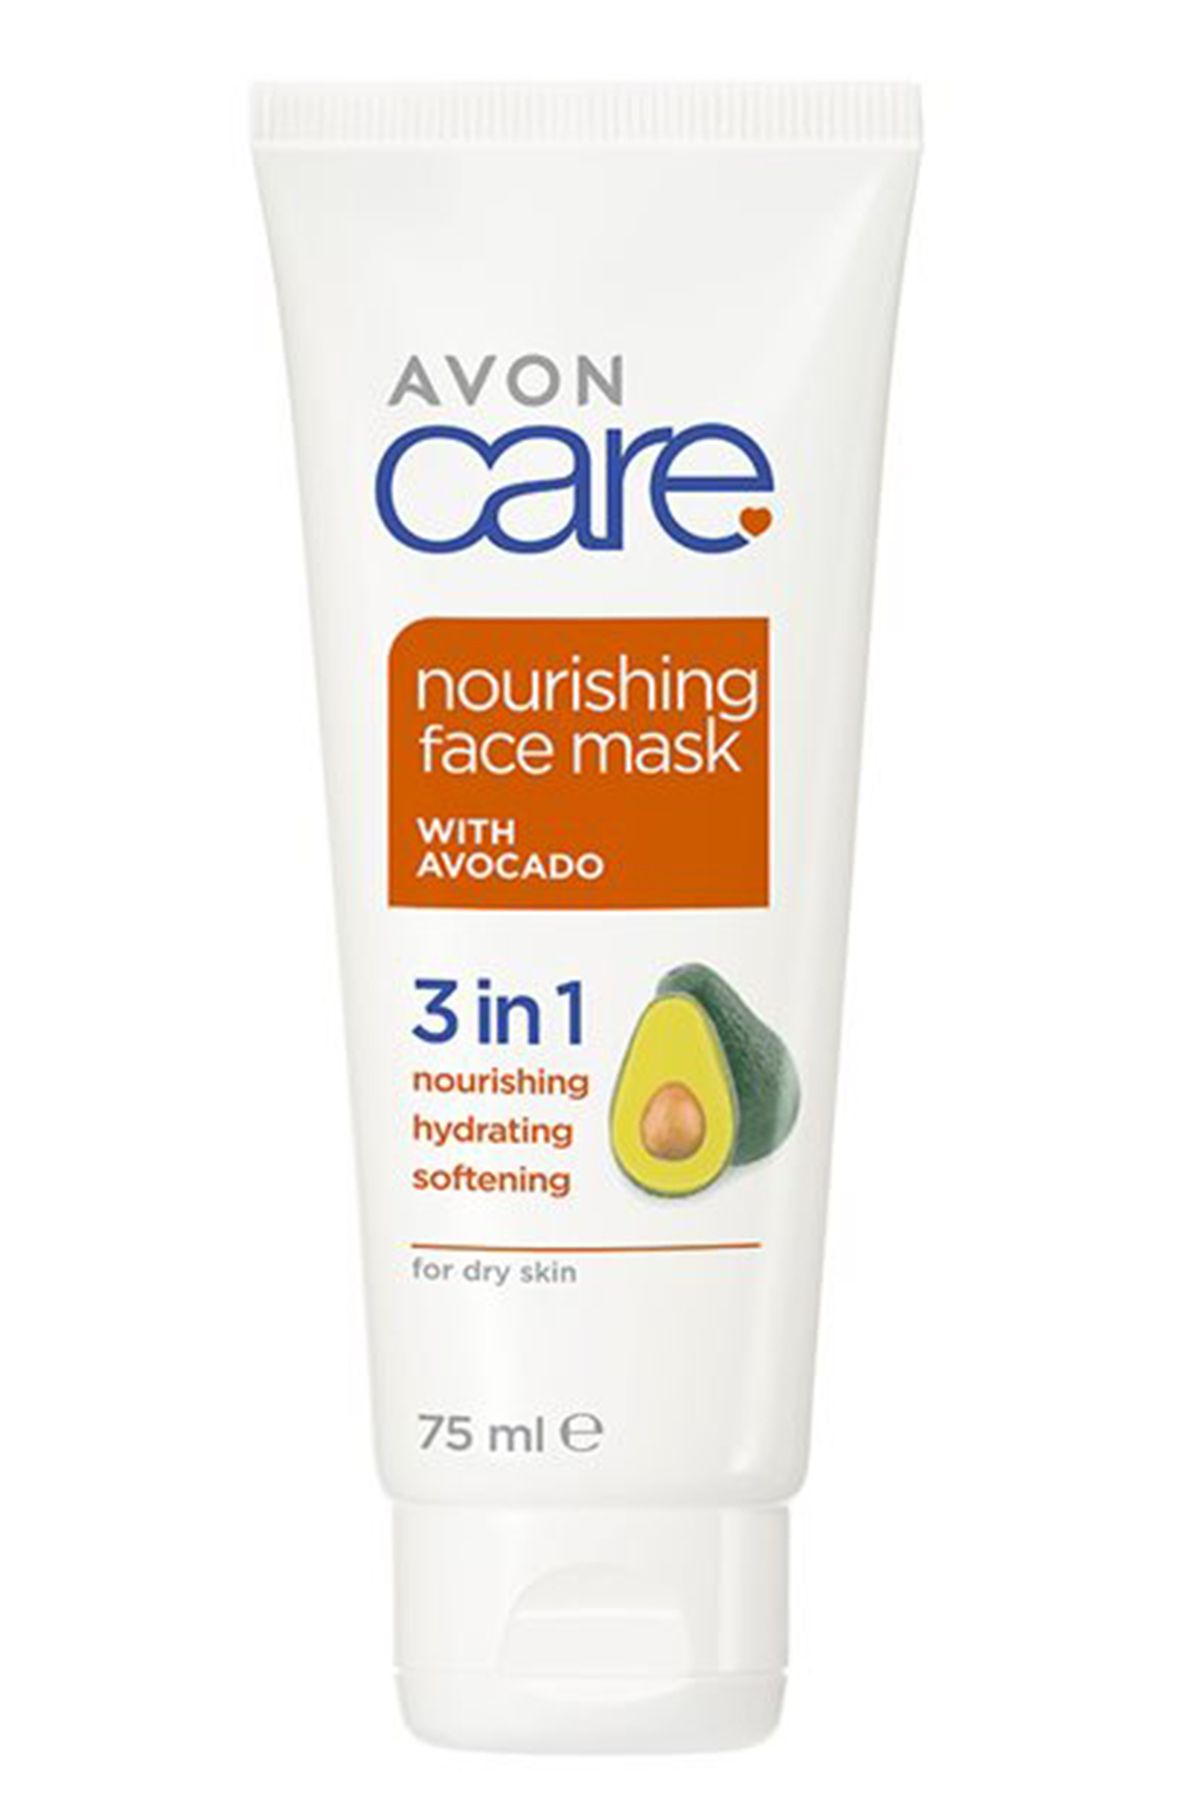 Avon Care Kuru Ciltler İçin 3'ü 1 arada Avokado Özlü Yüz Maskesi 75 Ml.